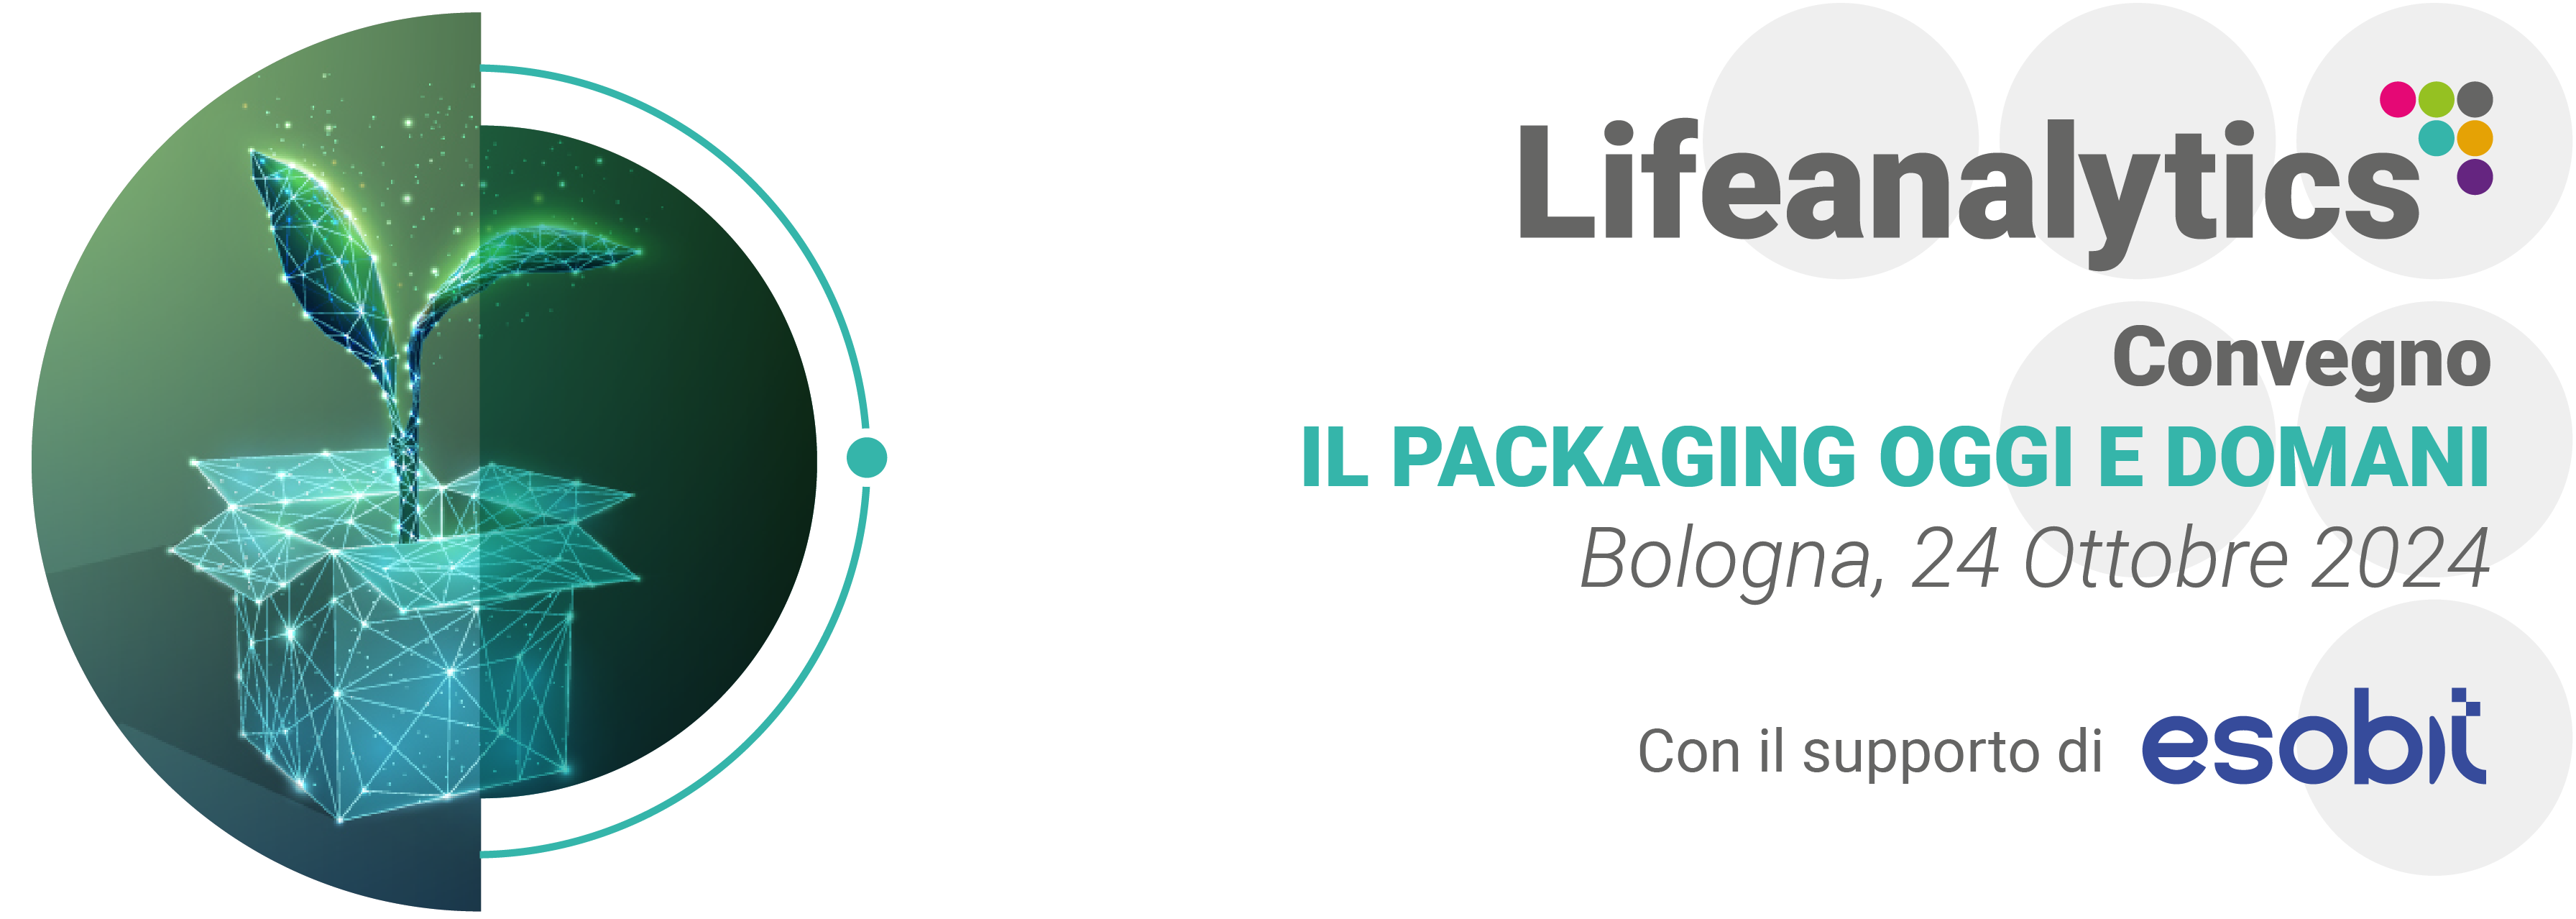 Illustrazione che rappresenta il convegno Il Packaging oggi e domani, organizzato dalla Business Unit Product Safety di Lifeanalytics c</body></html>